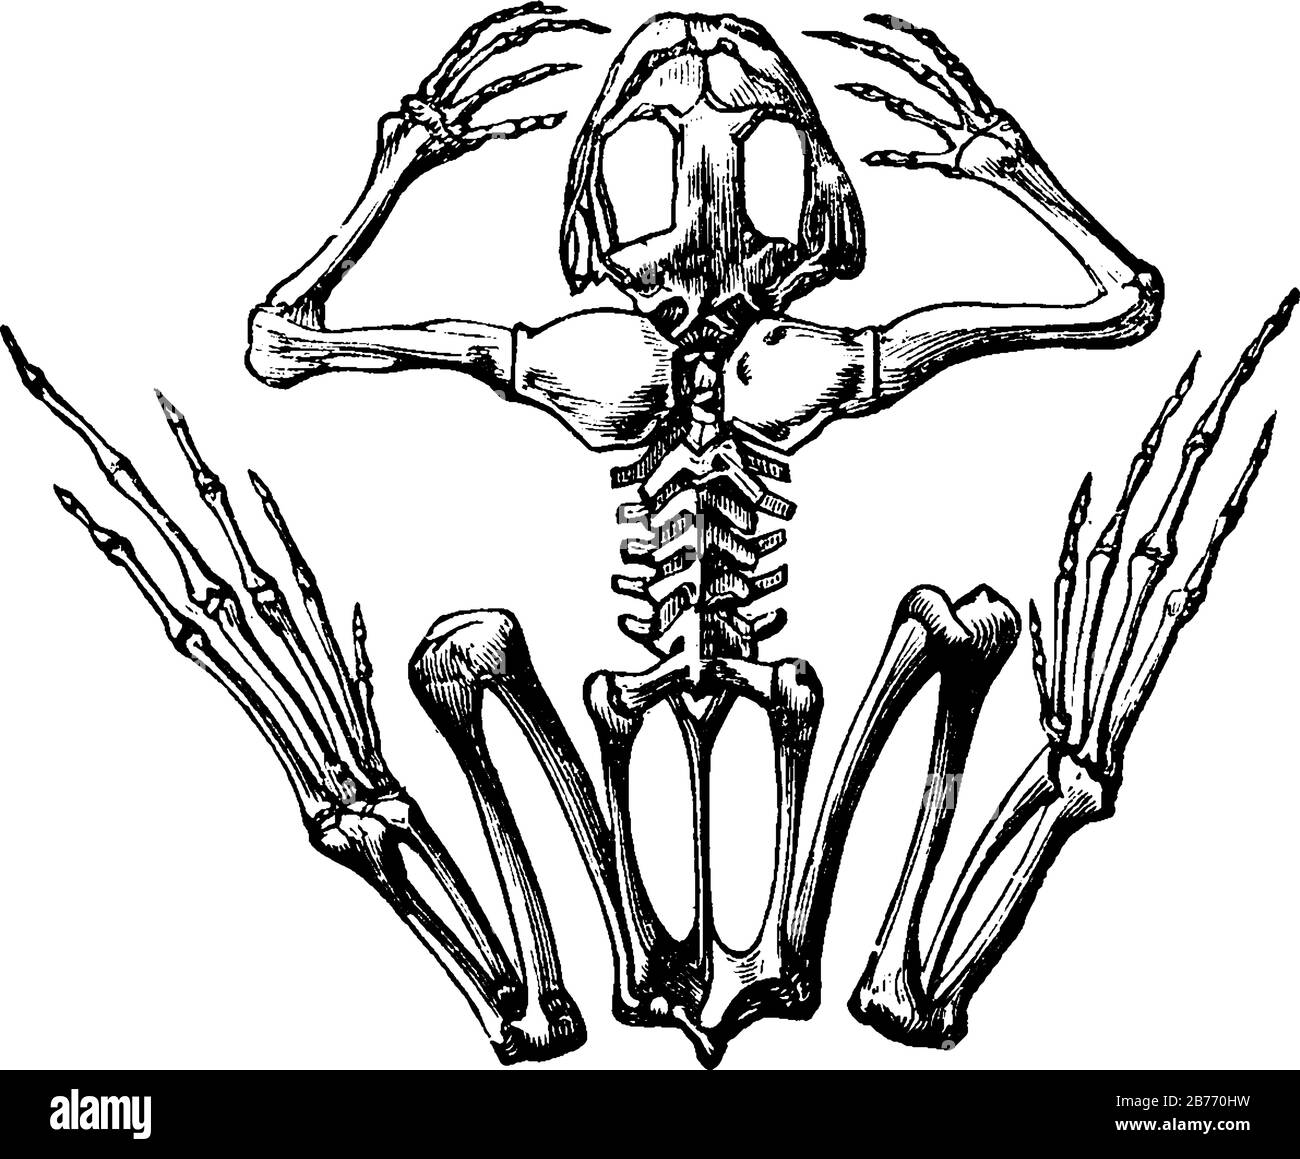 El esqueleto de una rana. Las ranas son un grupo carnívoro de anfibios de cuerpo corto y tailless del orden Anura produce una amplia gama de vocalizaciones, vin Ilustración del Vector